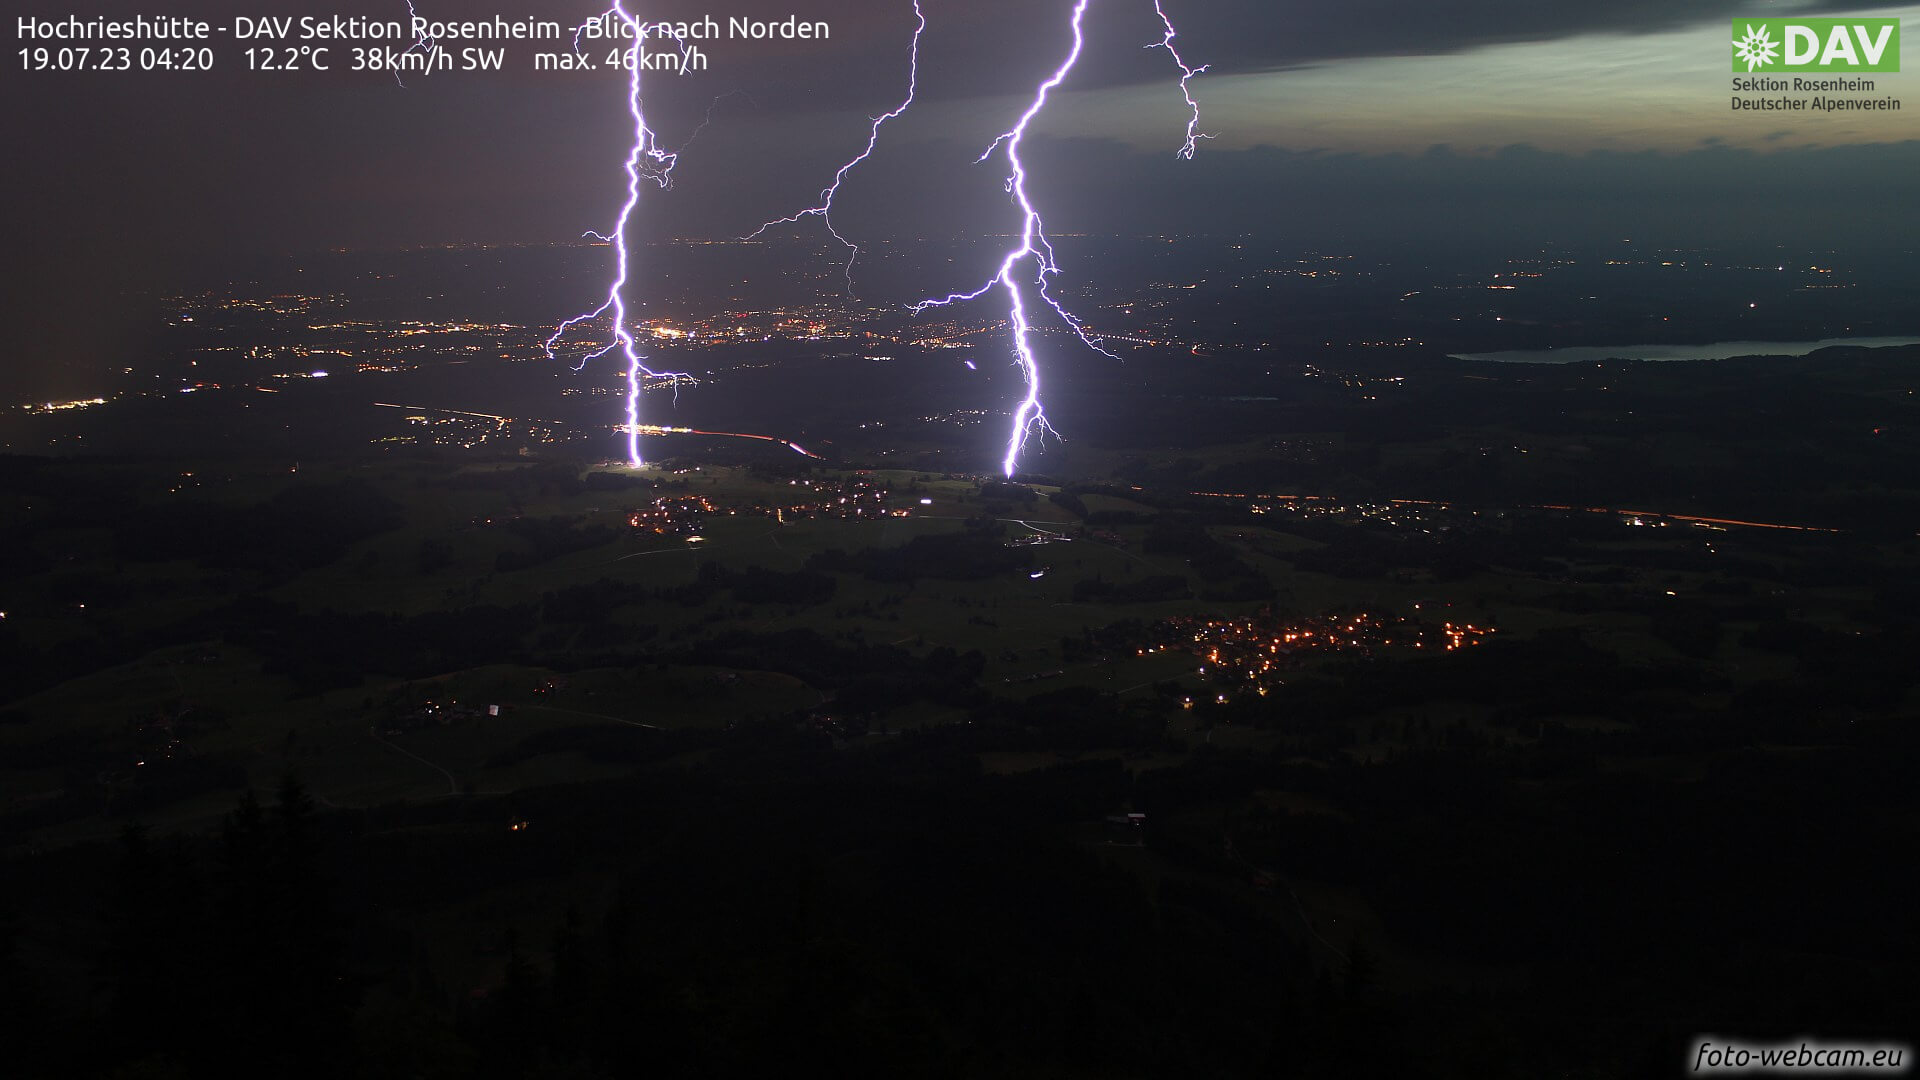 Blitz und Donner über das bayrlische Flachland von der Hochrieshütte aus